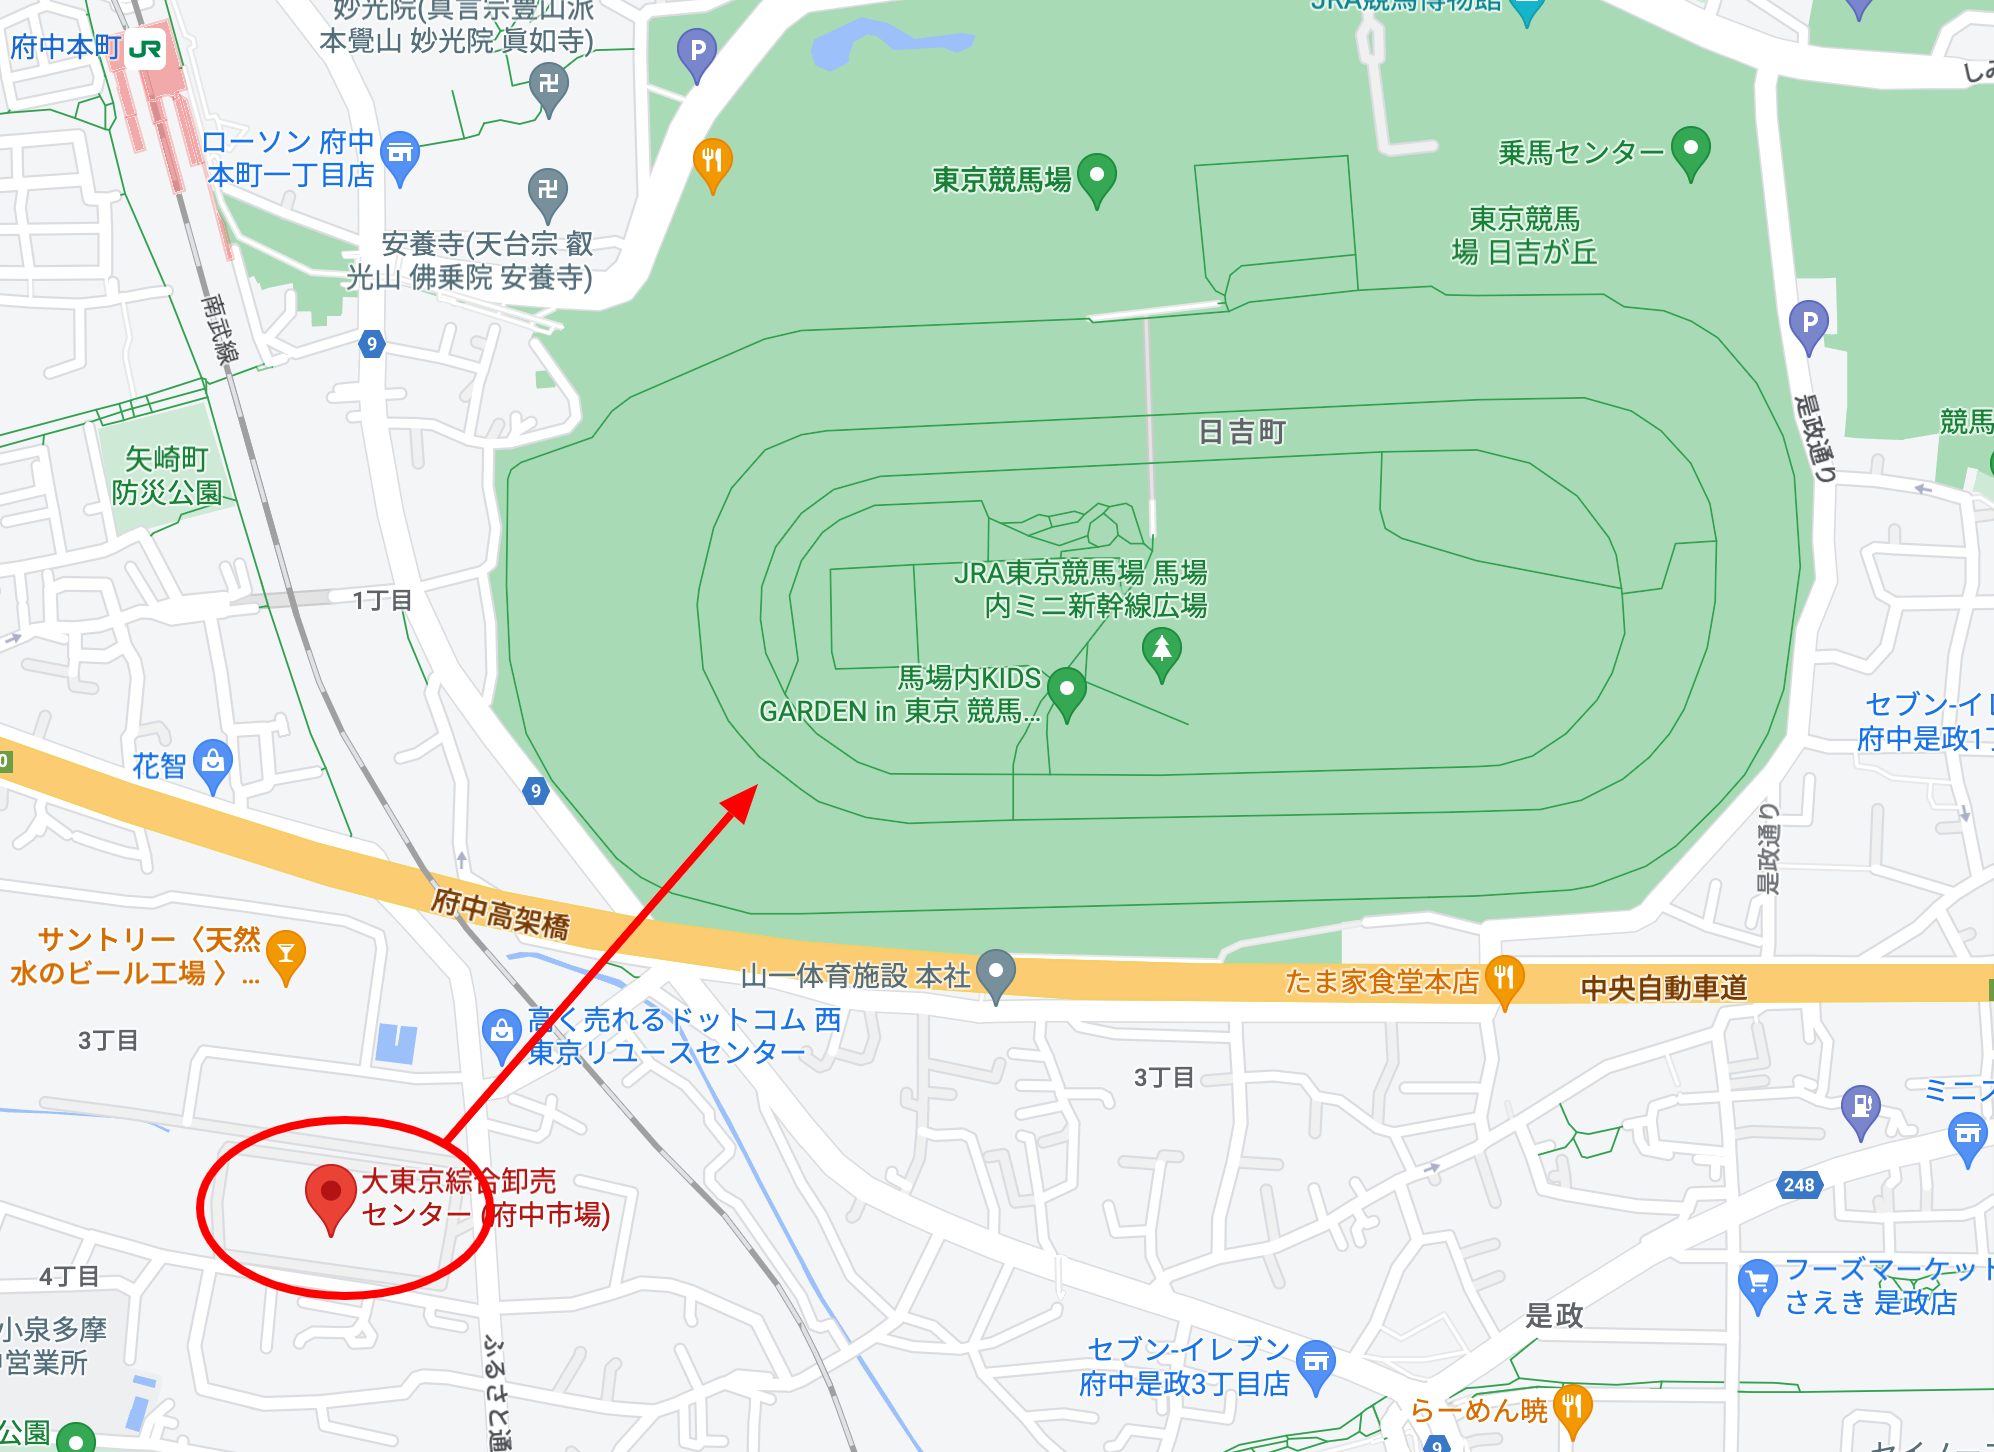 東京すごい花火2023の穴場・場外スポットは大東京総合卸売センターの屋上駐車場